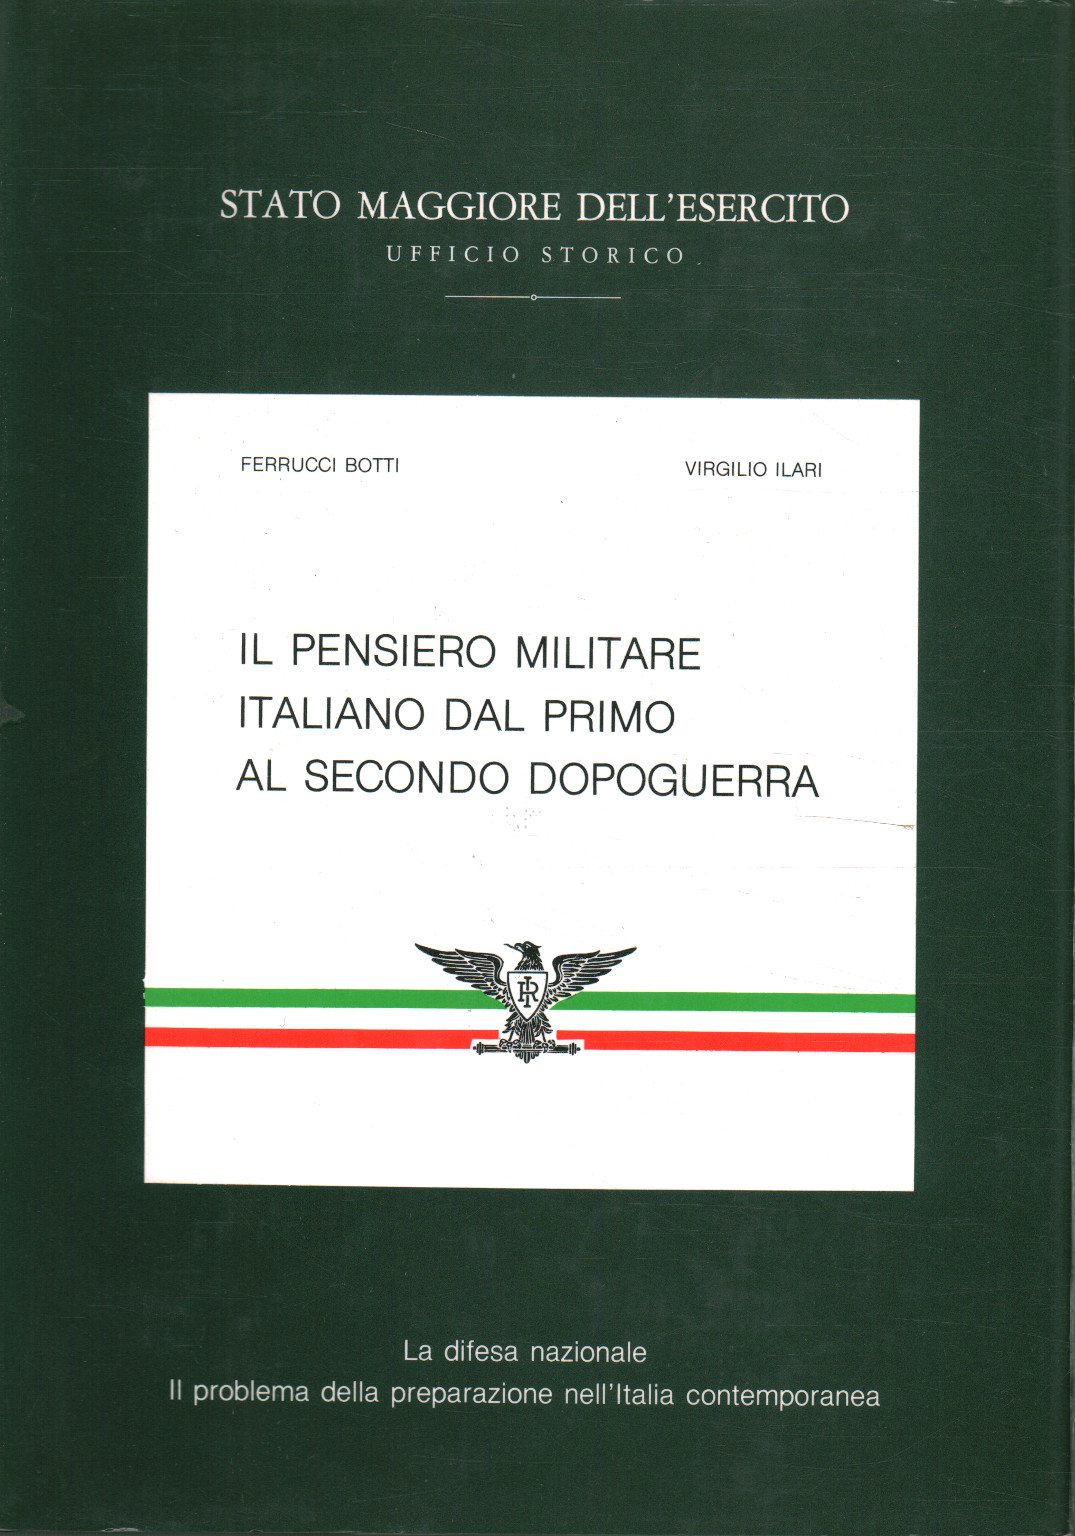 Italienisches militärisches Denken von Anfang an%,Italienisches militärisches Denken von Anfang an%,Italienisches militärisches Denken von Anfang an%